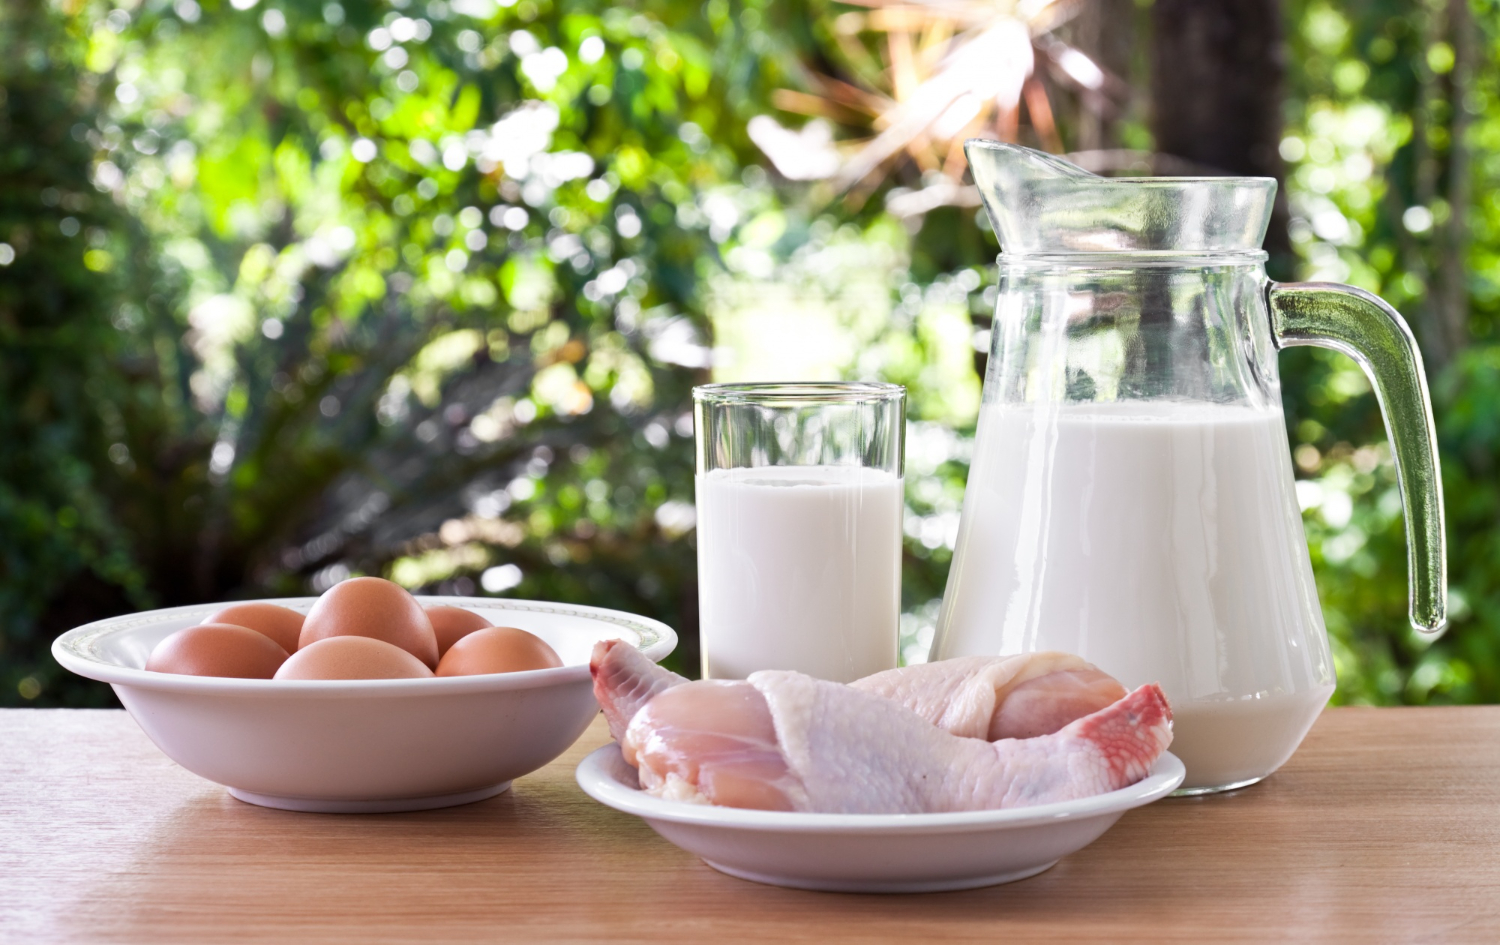 makanan yang mengandung bahan kimia kontaminasi daging susu telur